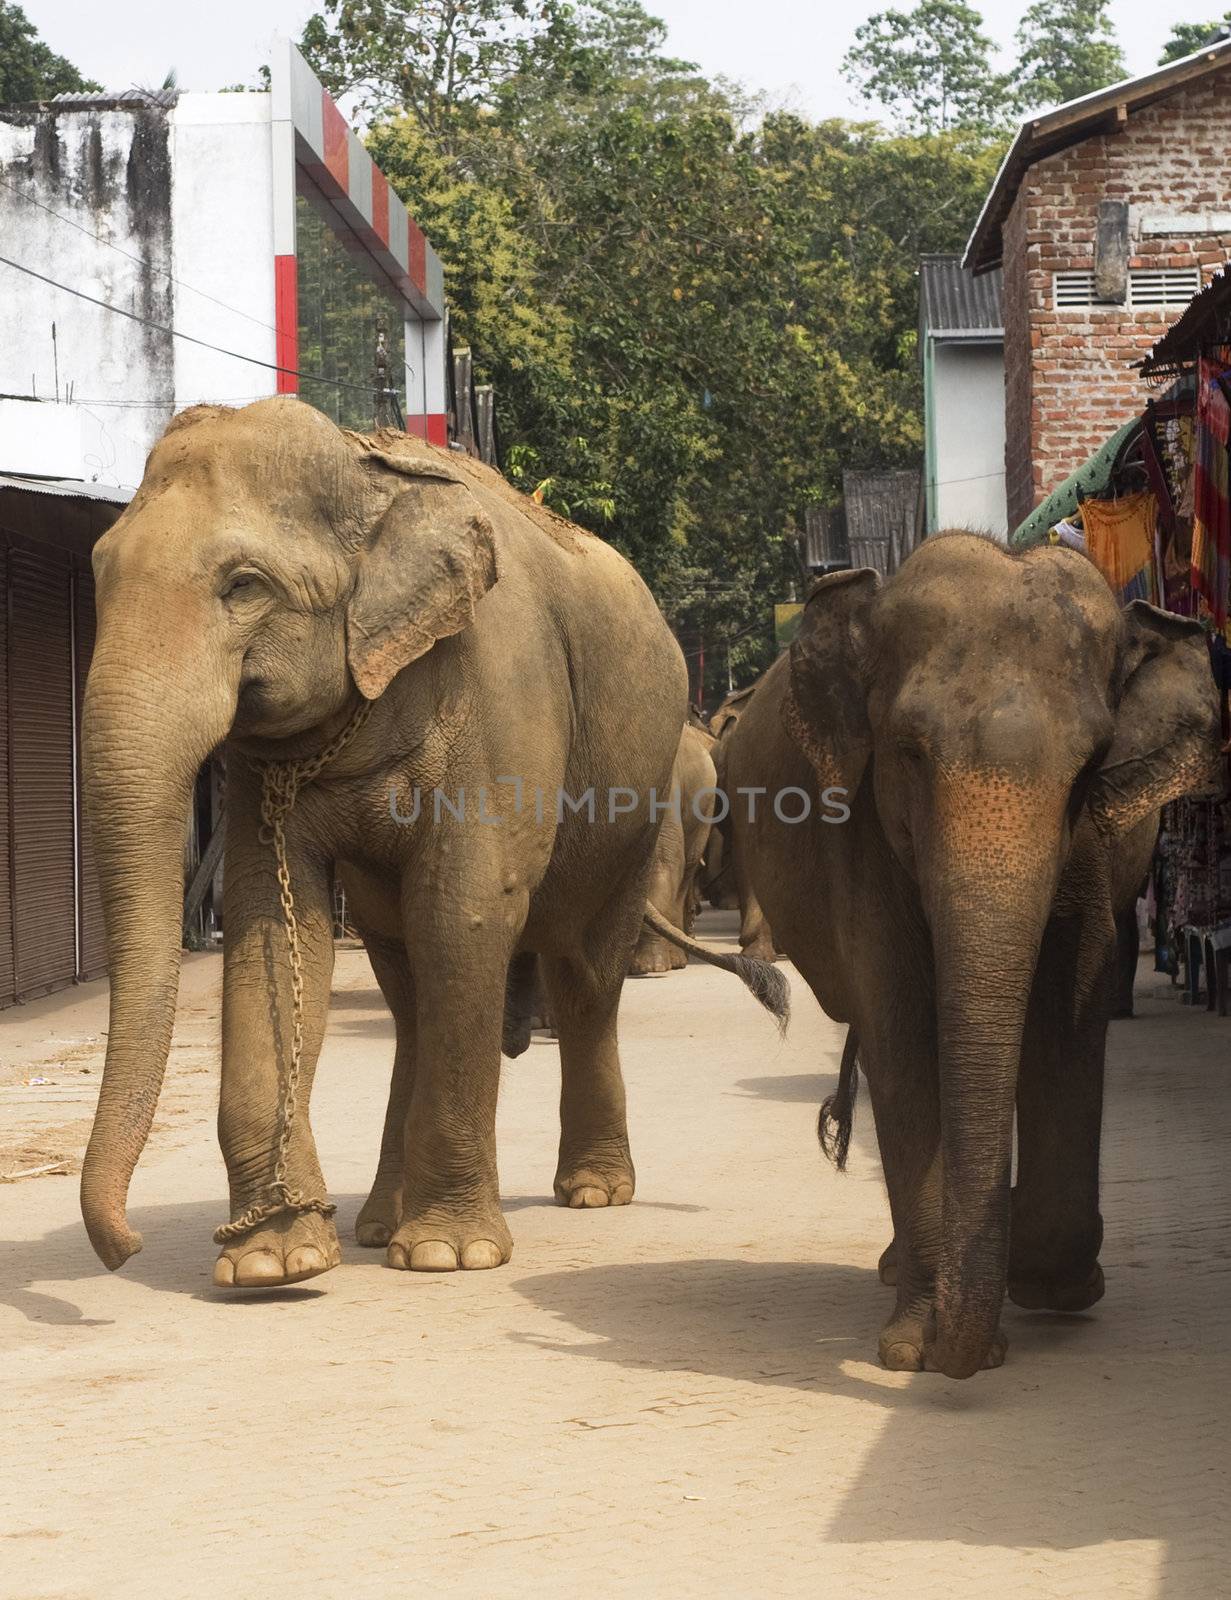 Elephants walking on the srtreet at Elephant Orphanage in Pinnawela, Sri Lanka